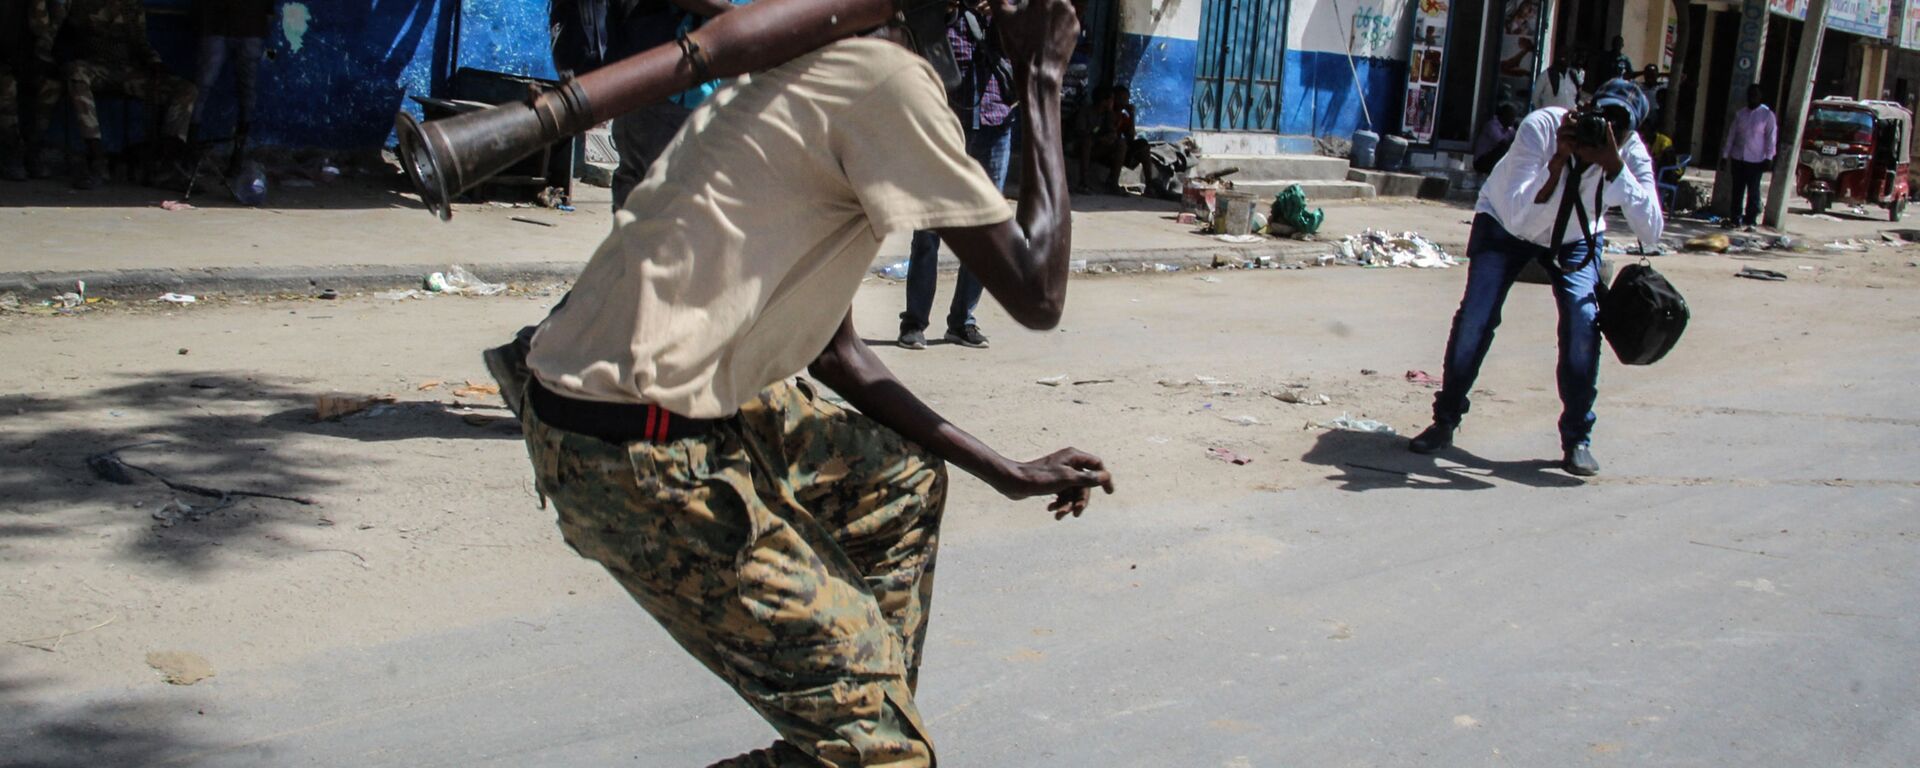 شخص يلتقط صورة لعضو في القوة العسكرية الصومالية يدعم المناوئين للحكومة أثناء وقوفه في أحد شوارع مقديشو، الصومال، 25 أبريل 2021 - سبوتنيك عربي, 1920, 25.09.2022